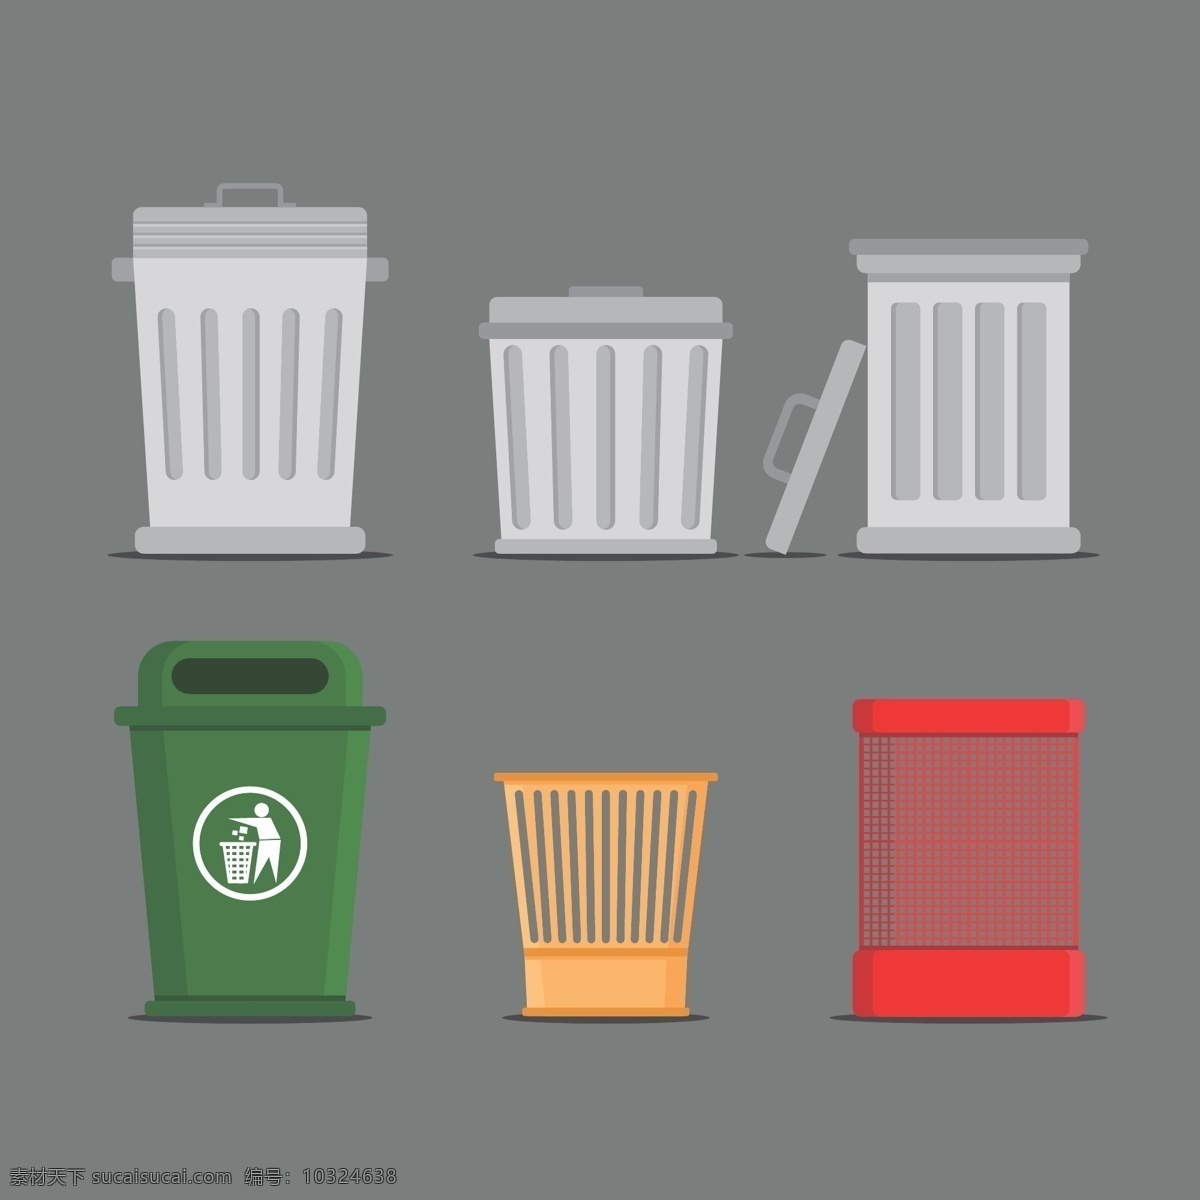 垃圾桶 垃圾 垃圾桶设计 垃圾桶图片 垃圾桶素材 垃圾桶简笔画 静物